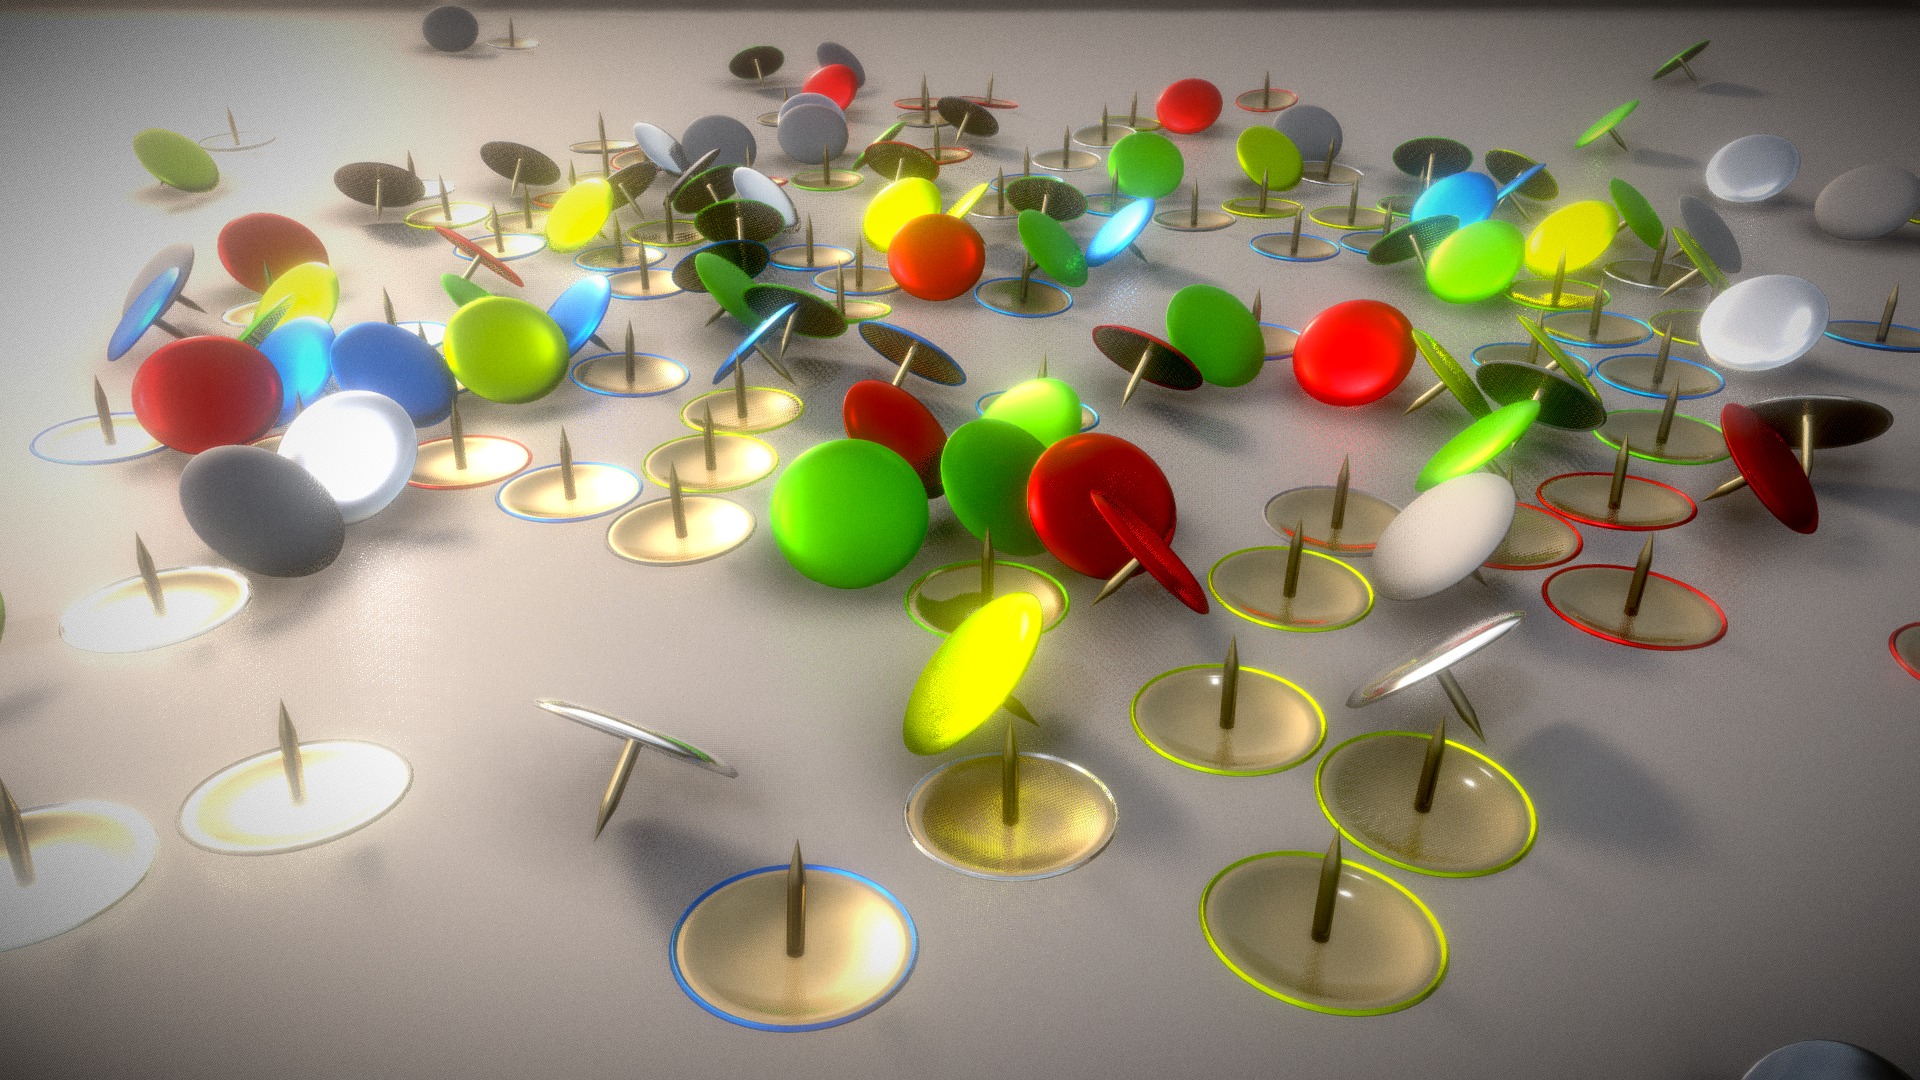 3D model Thumbtacks - This is a 3D model of the Thumbtacks. The 3D model is about a group of colorful balls.